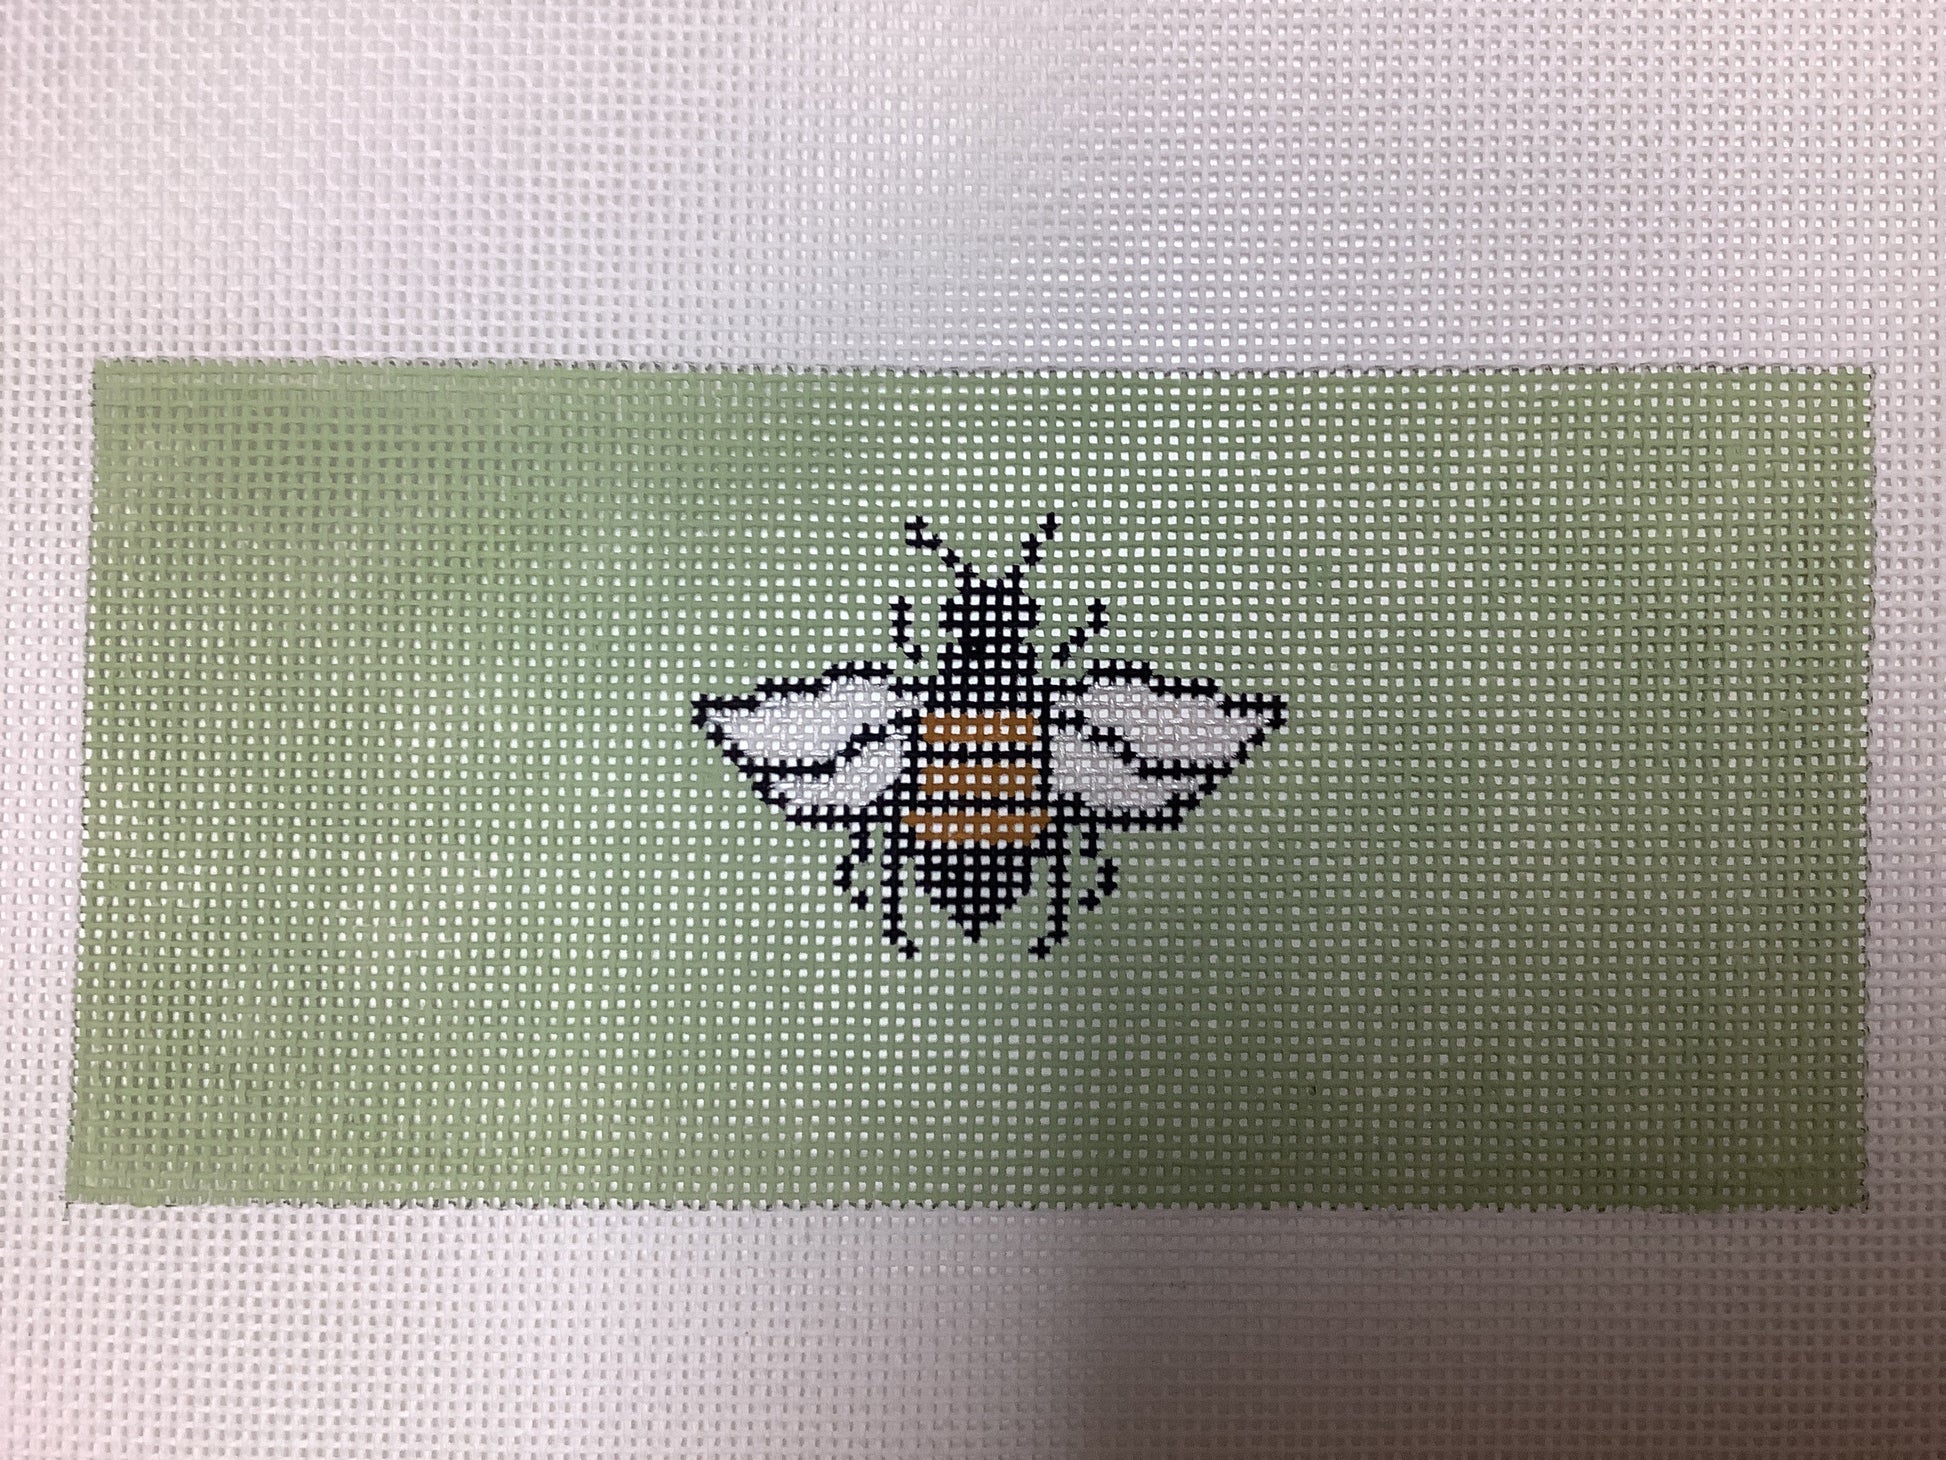 Bee on Green Insert Needlecraft Canvas